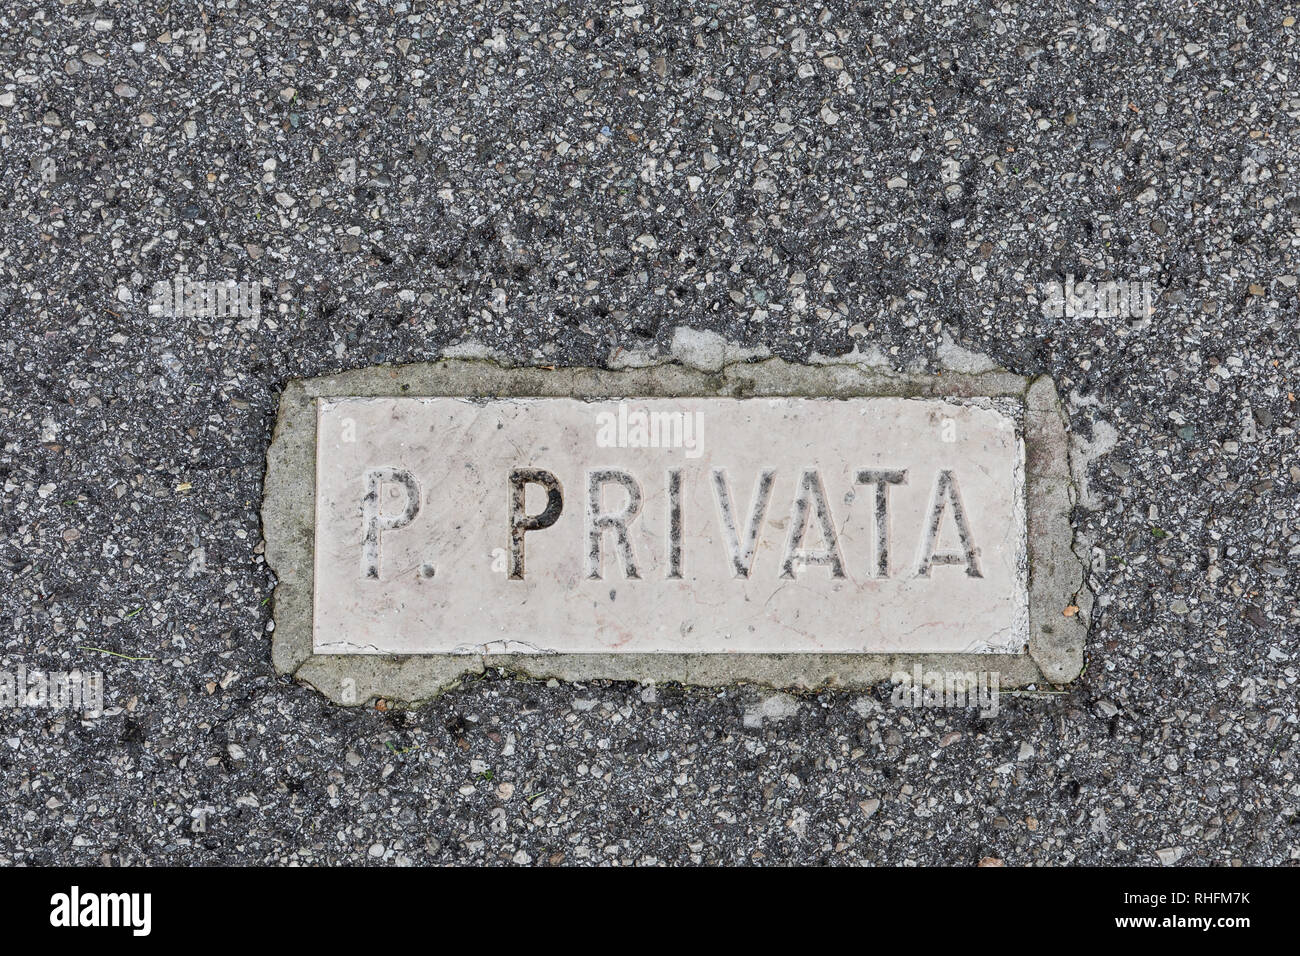 Proprietà privata (Private property) sign on asphalt Stock Photo